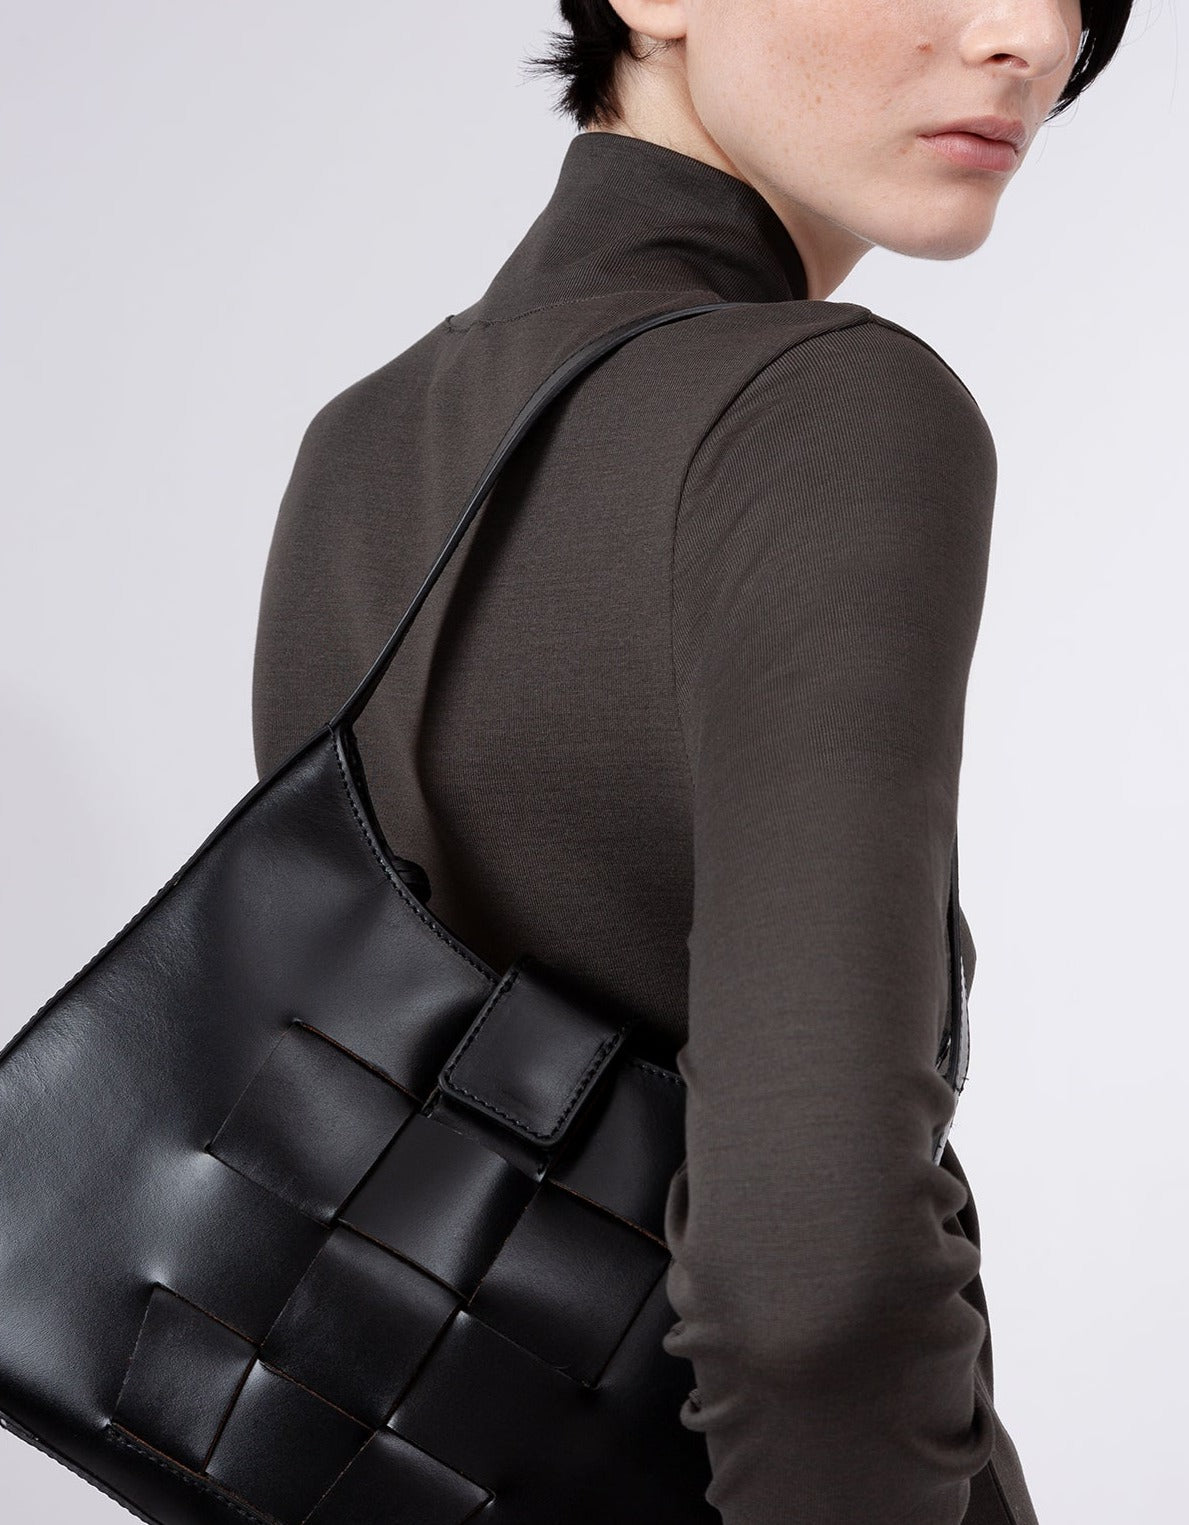 BAUZA - Structured Shoulder Bag